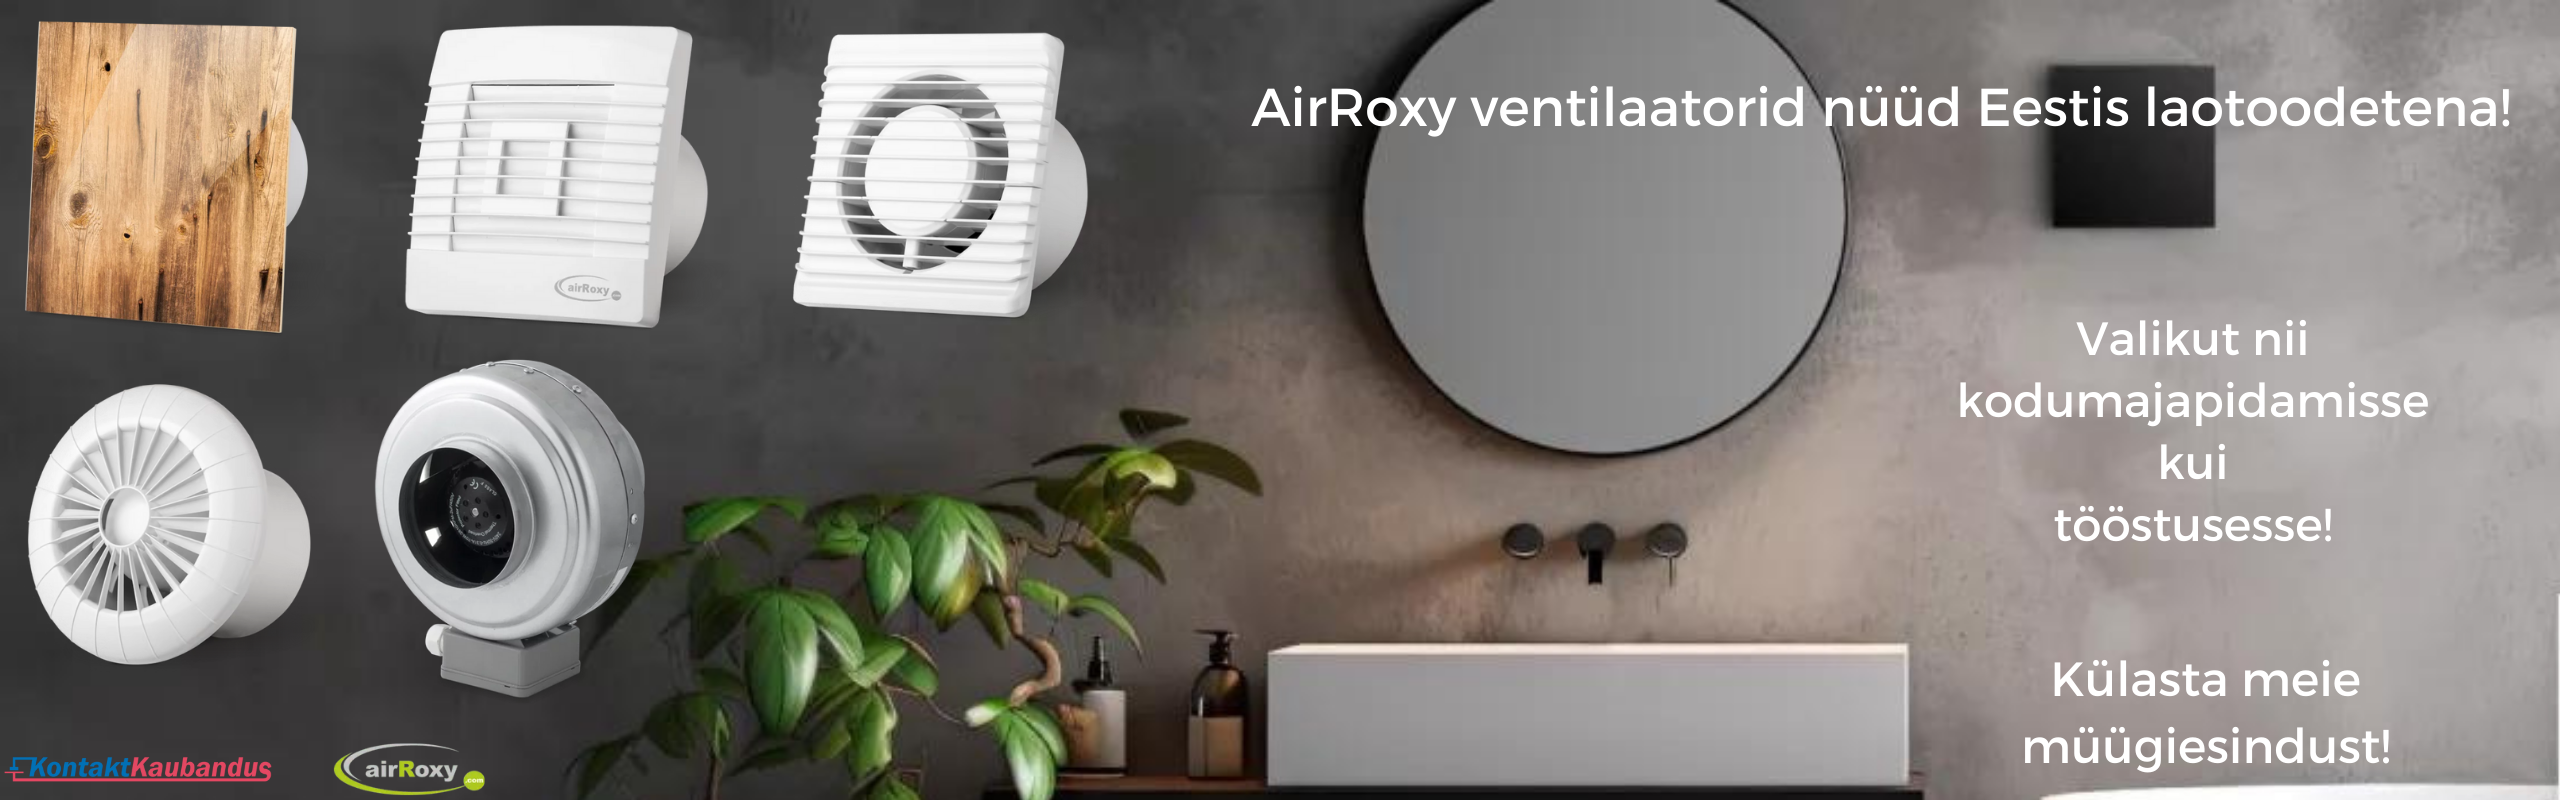 AirRoxy ventilaatorid nüüd Eestis laotoodetena!